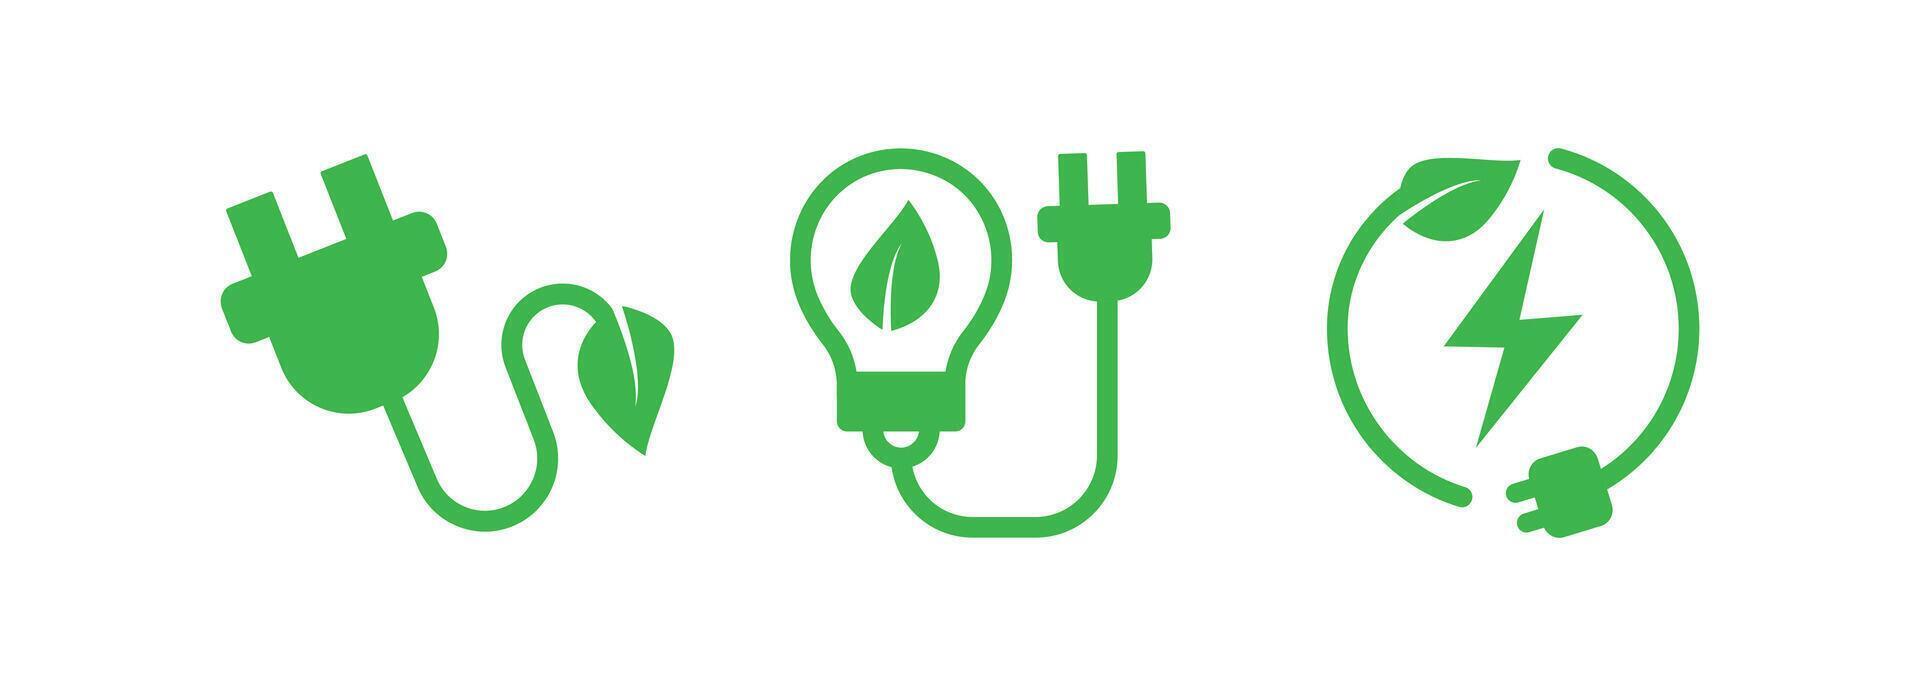 elektrisk avgift blad och kraft plugg tecken. plugg och blad eco begrepp ikon symbol, illustration. vektor